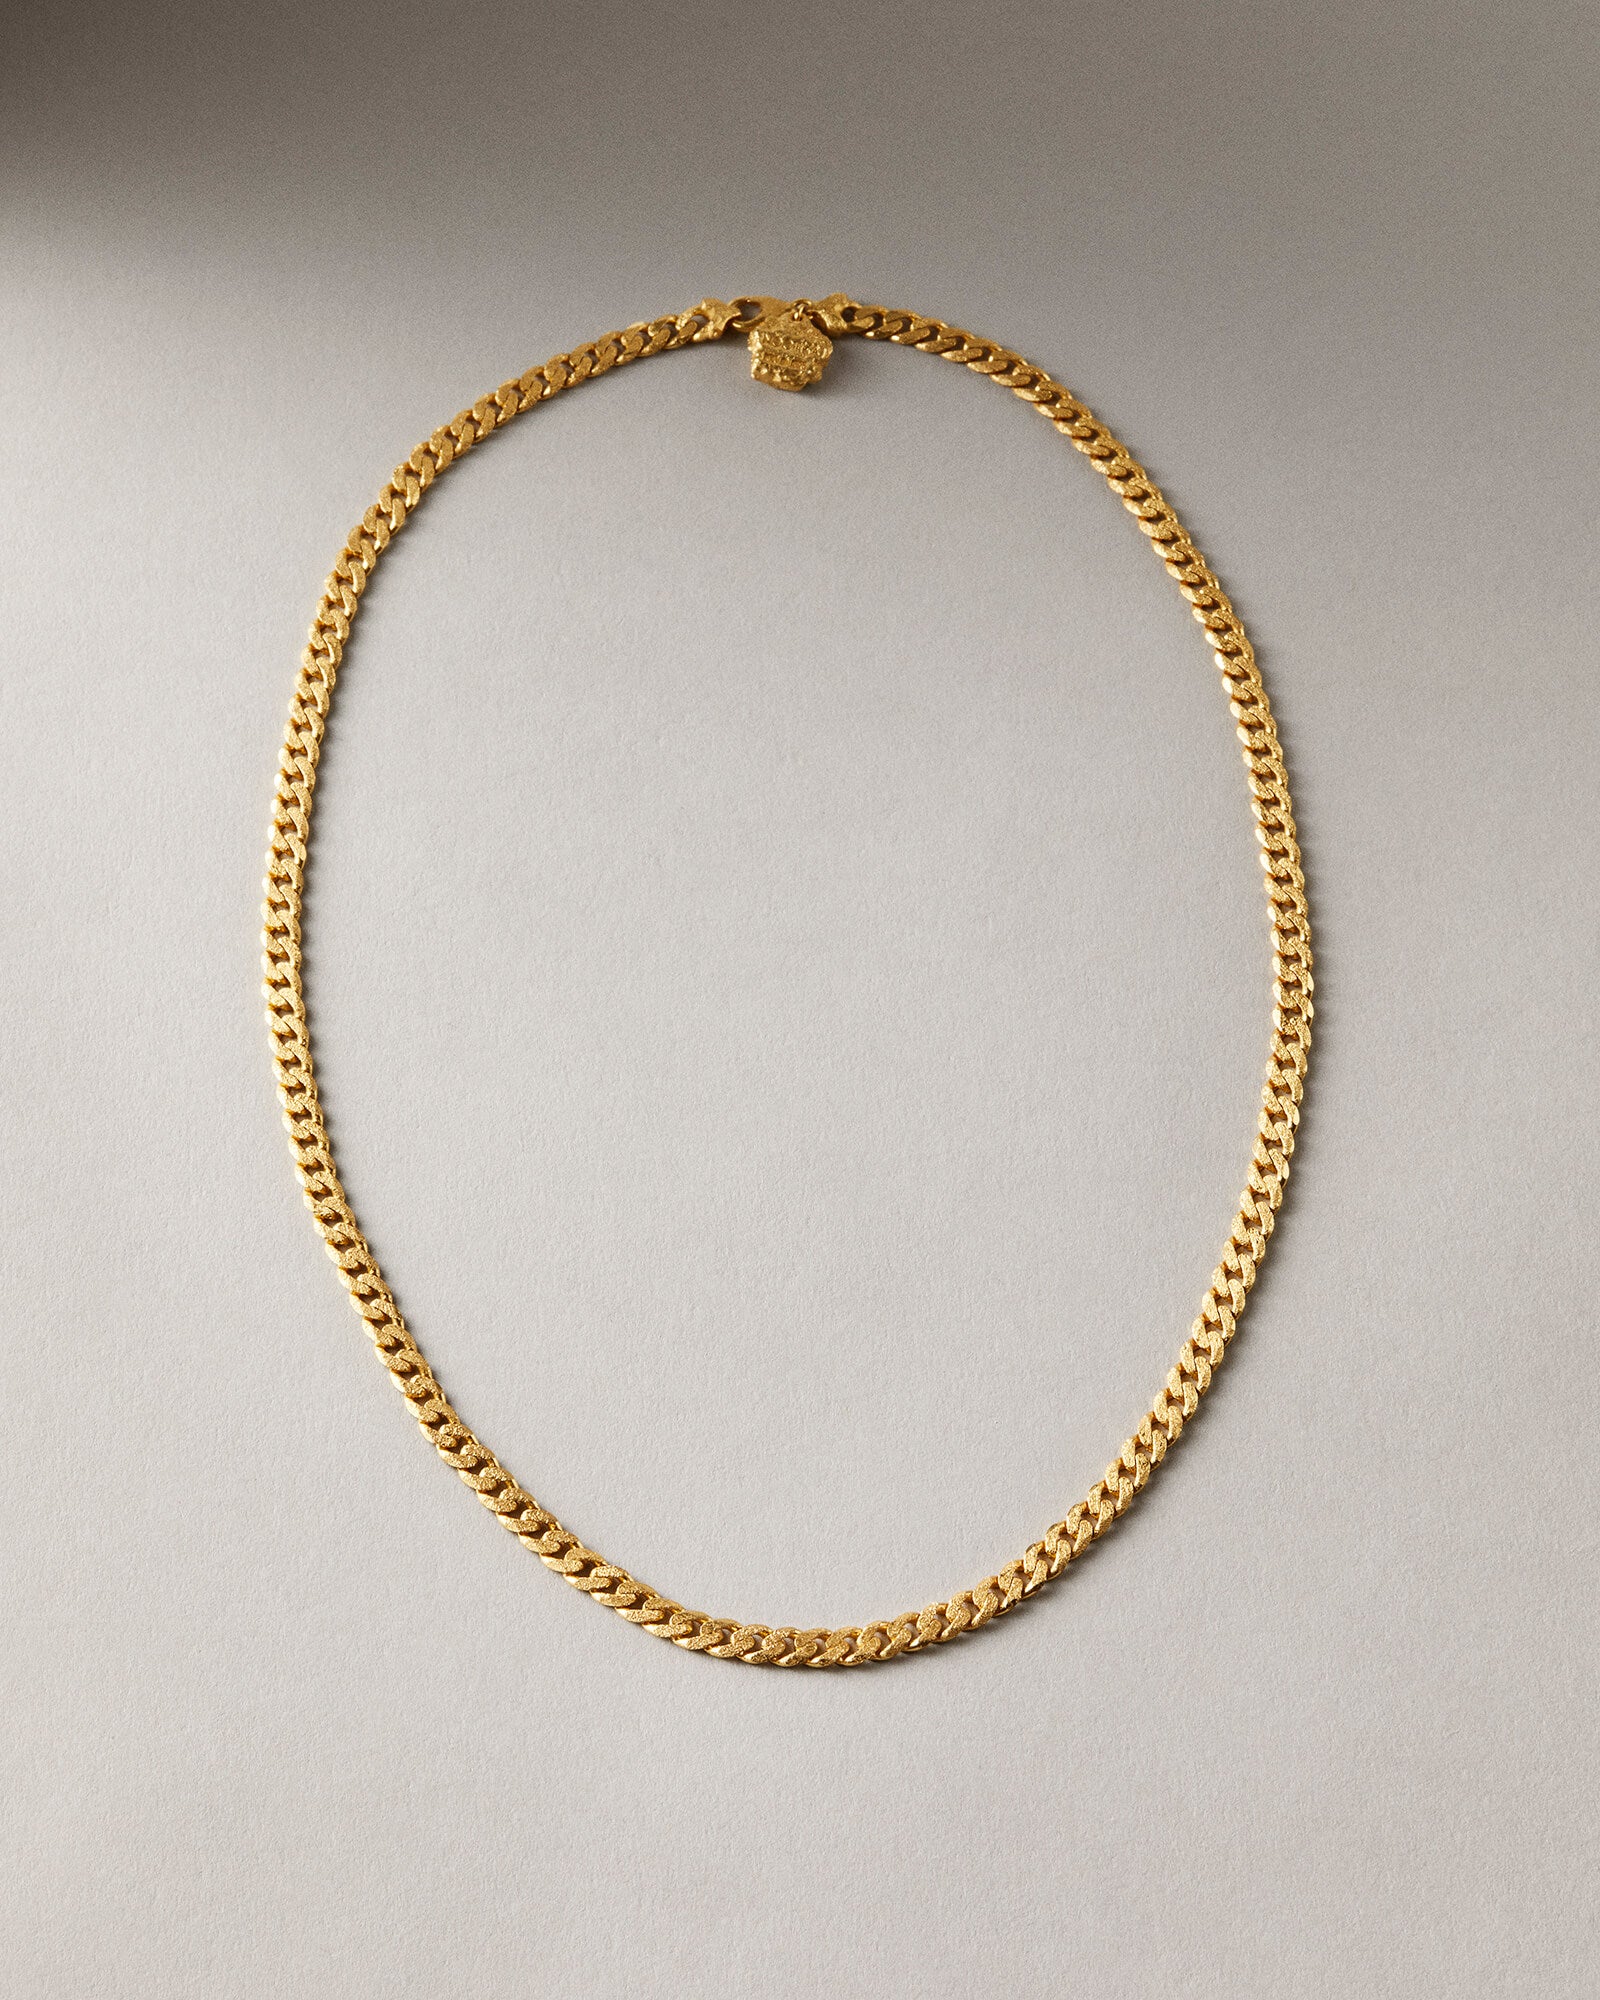 Nootka link necklace